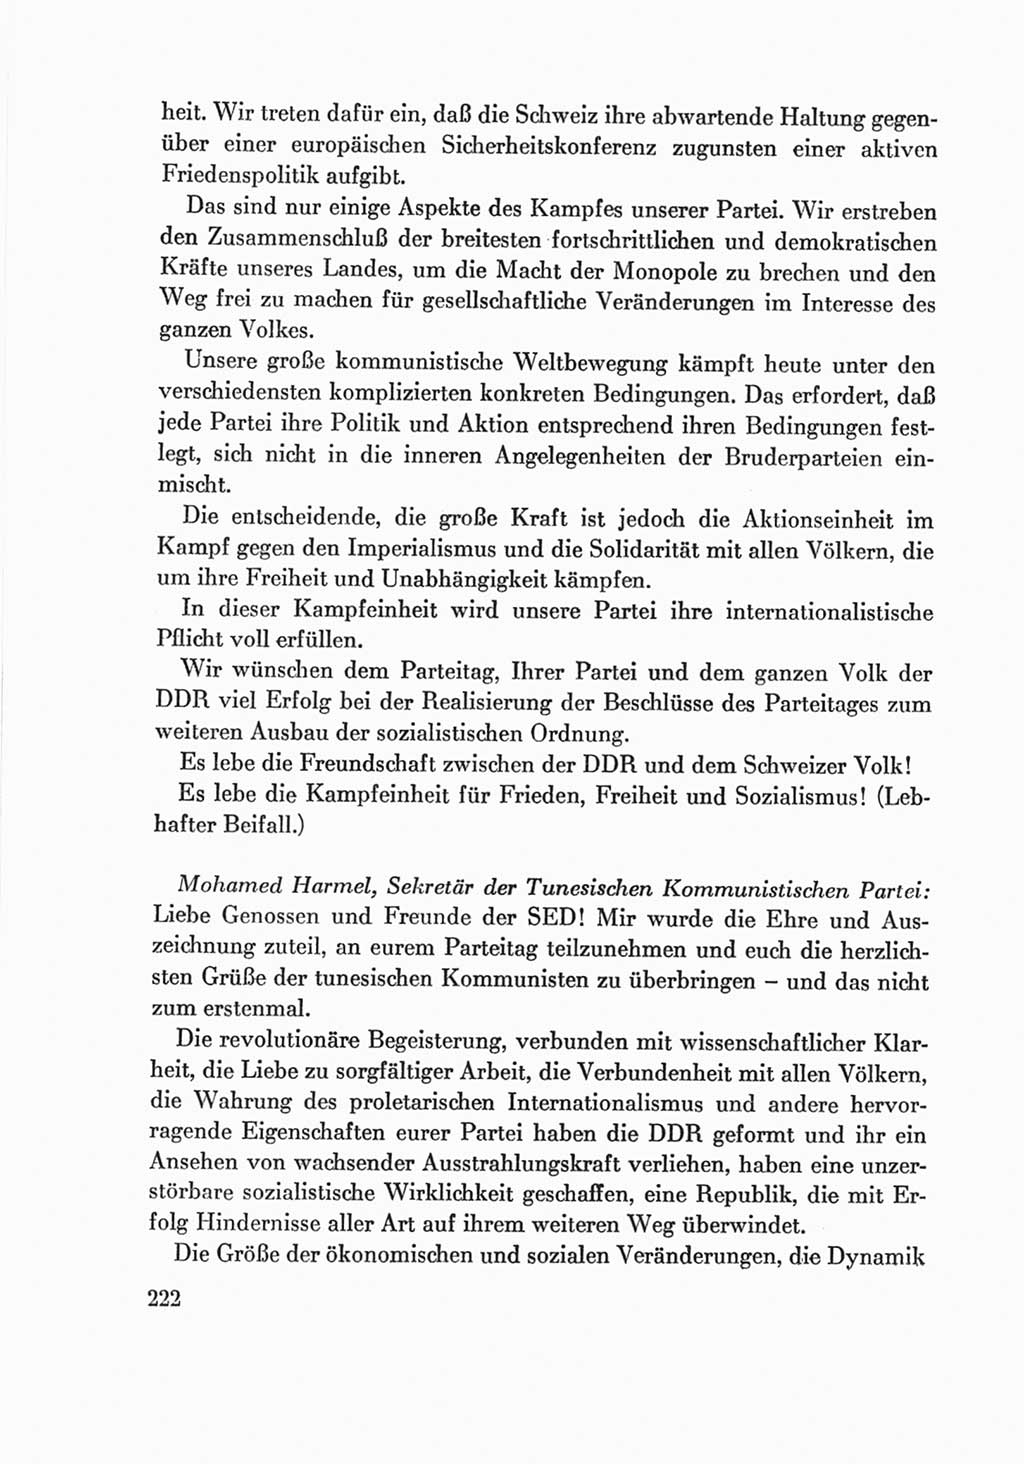 Protokoll der Verhandlungen des Ⅷ. Parteitages der Sozialistischen Einheitspartei Deutschlands (SED) [Deutsche Demokratische Republik (DDR)] 1971, Band 2, Seite 222 (Prot. Verh. Ⅷ. PT SED DDR 1971, Bd. 2, S. 222)